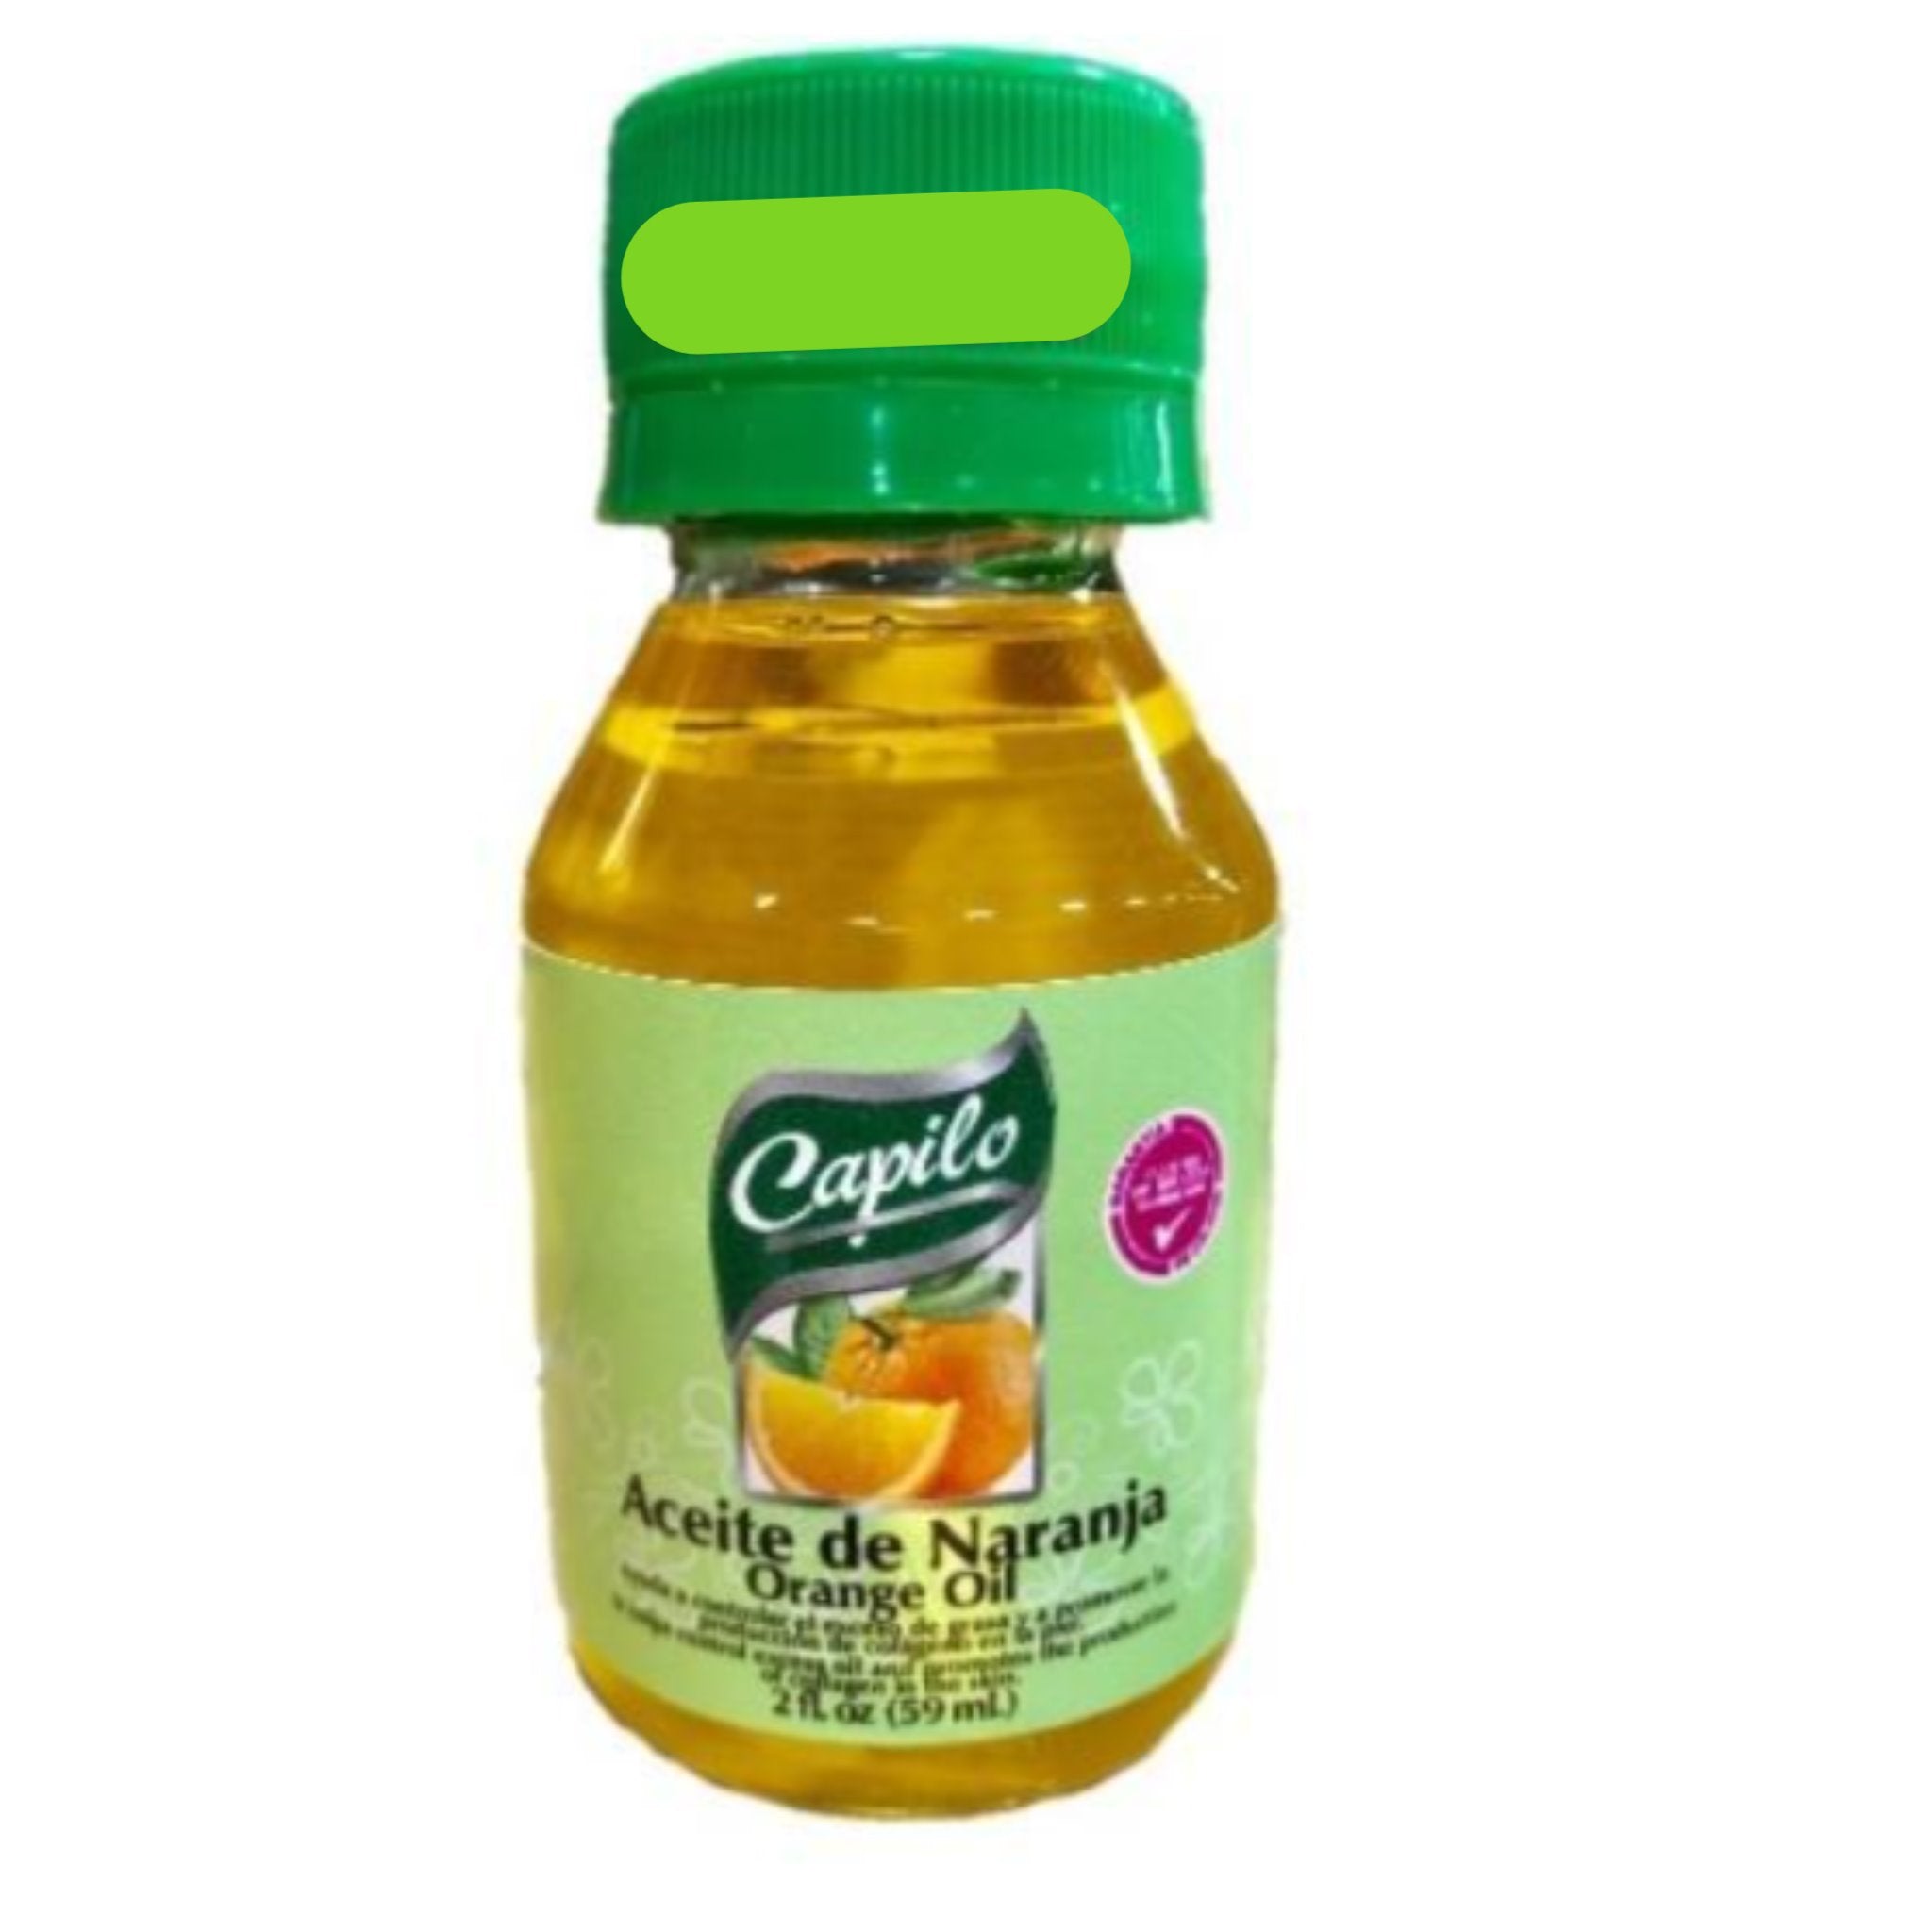 Capilo Orange Oil 2 oz